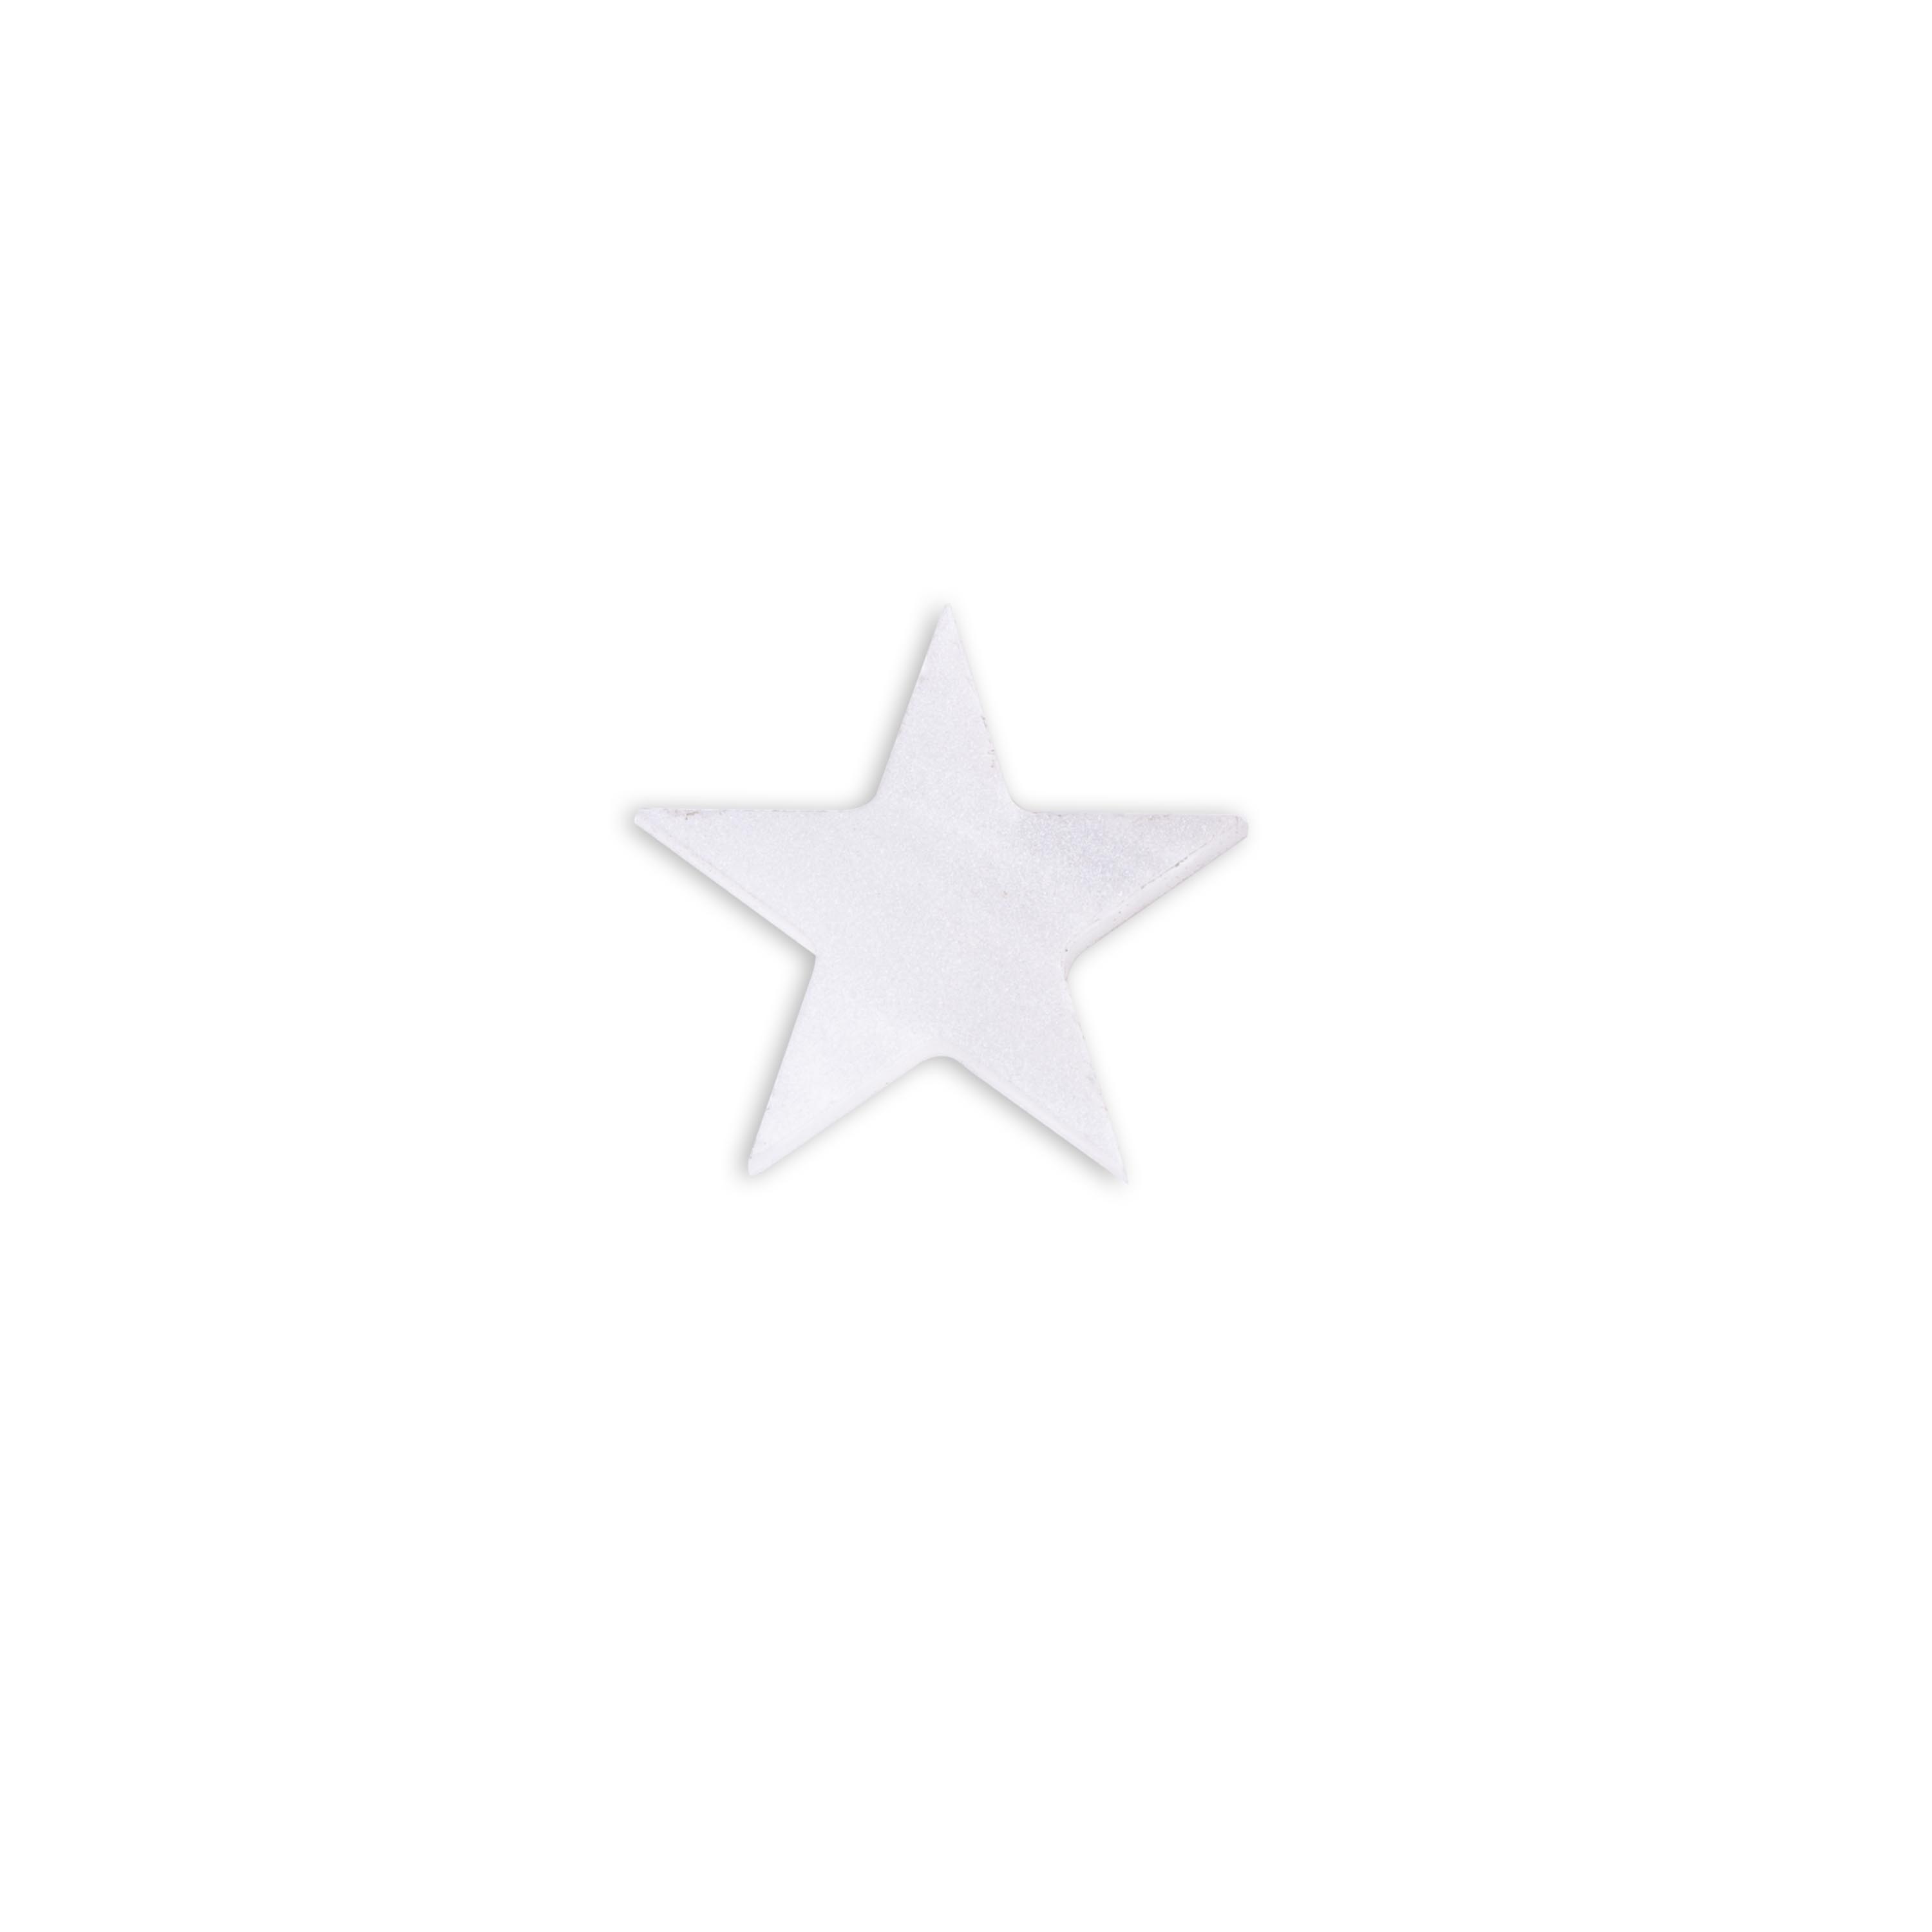 Pearloid Star